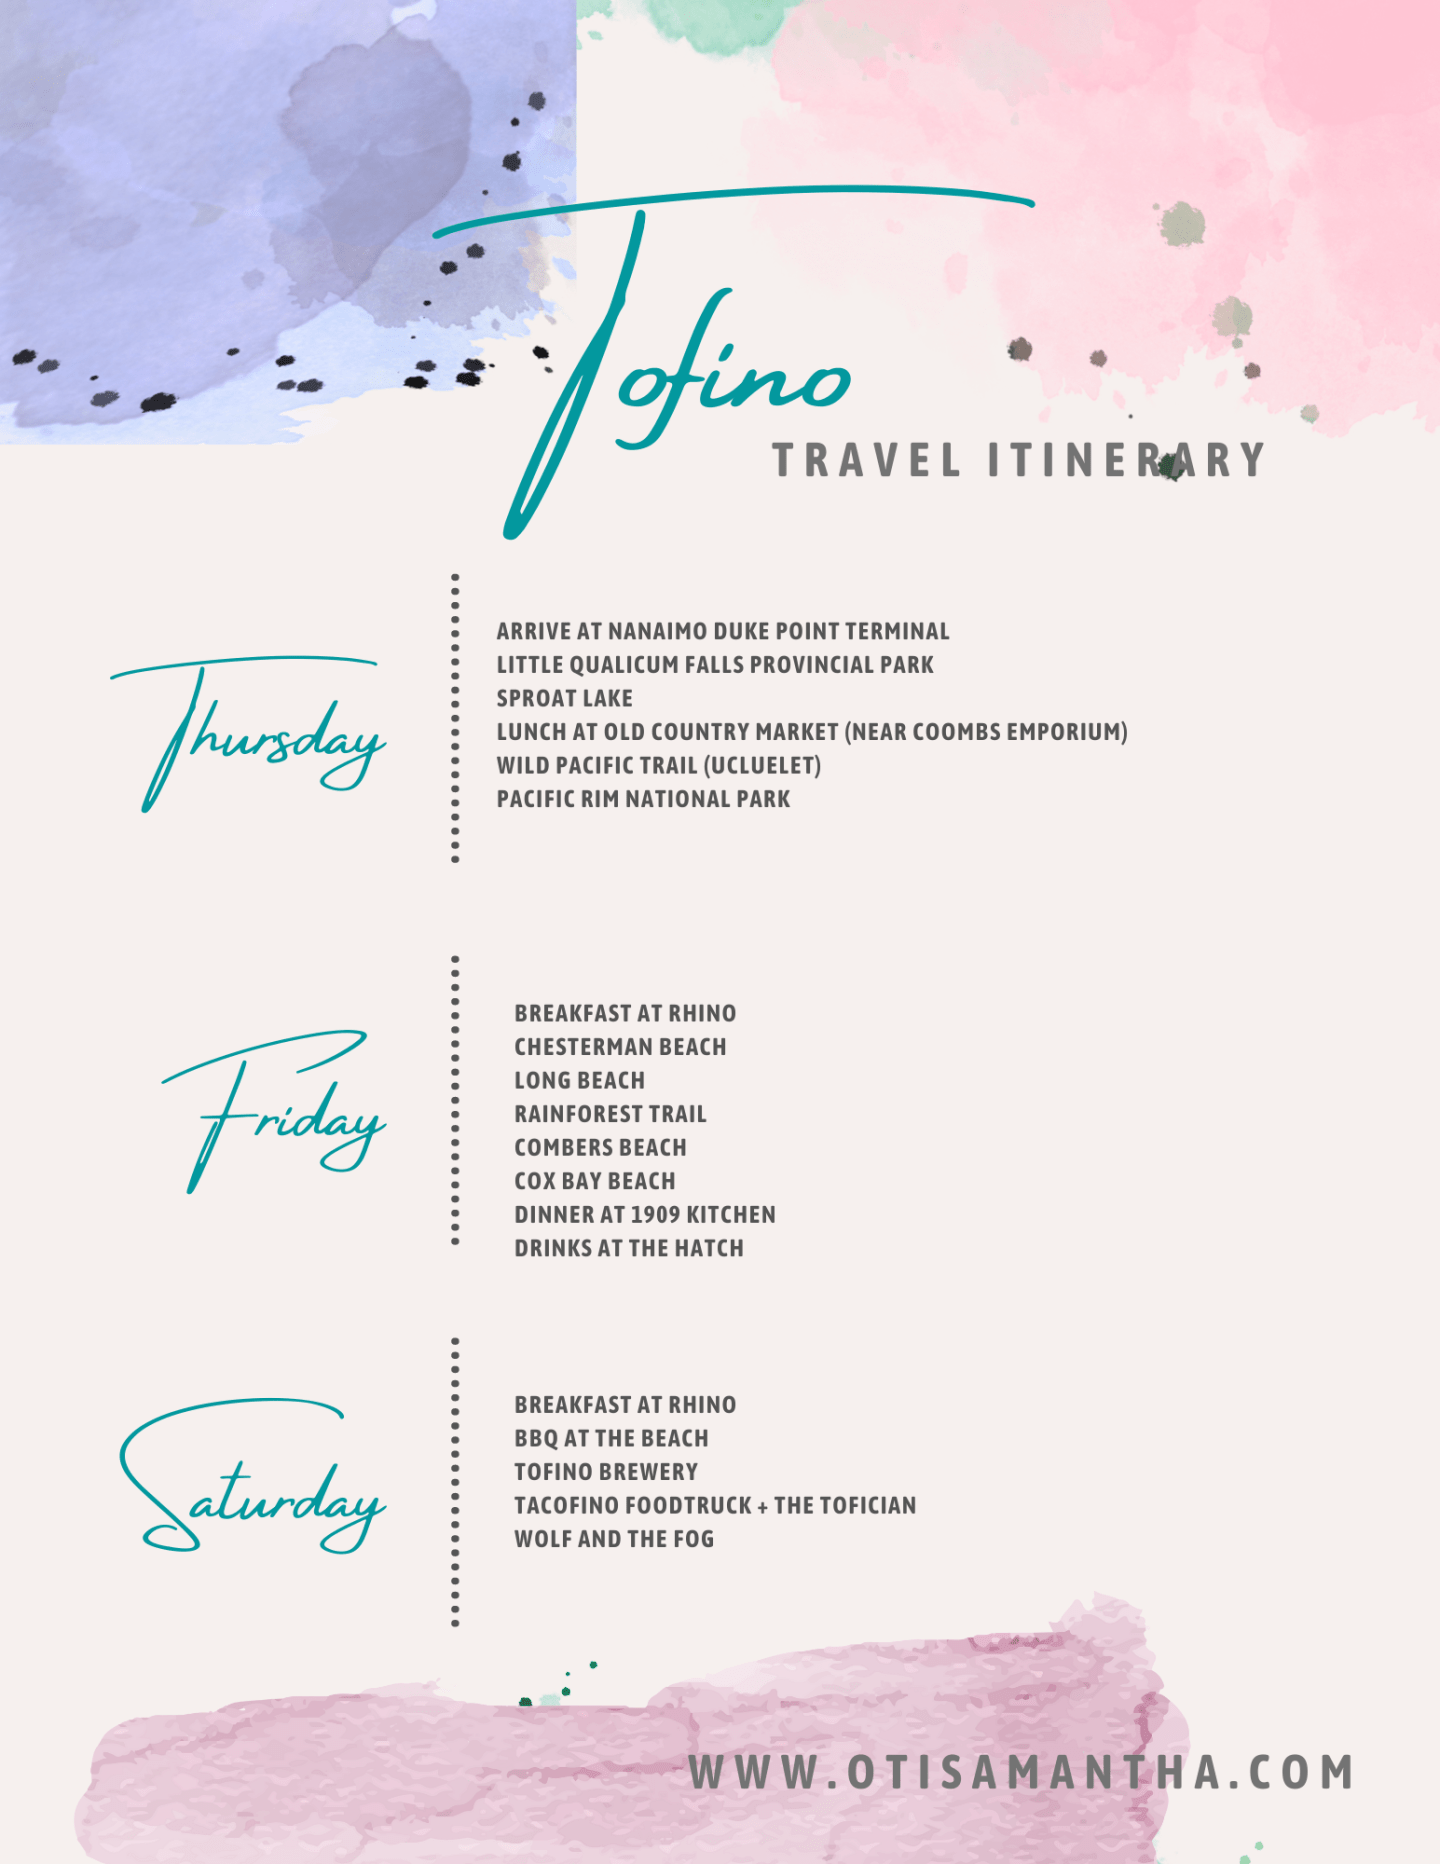 tofino travel itinerary